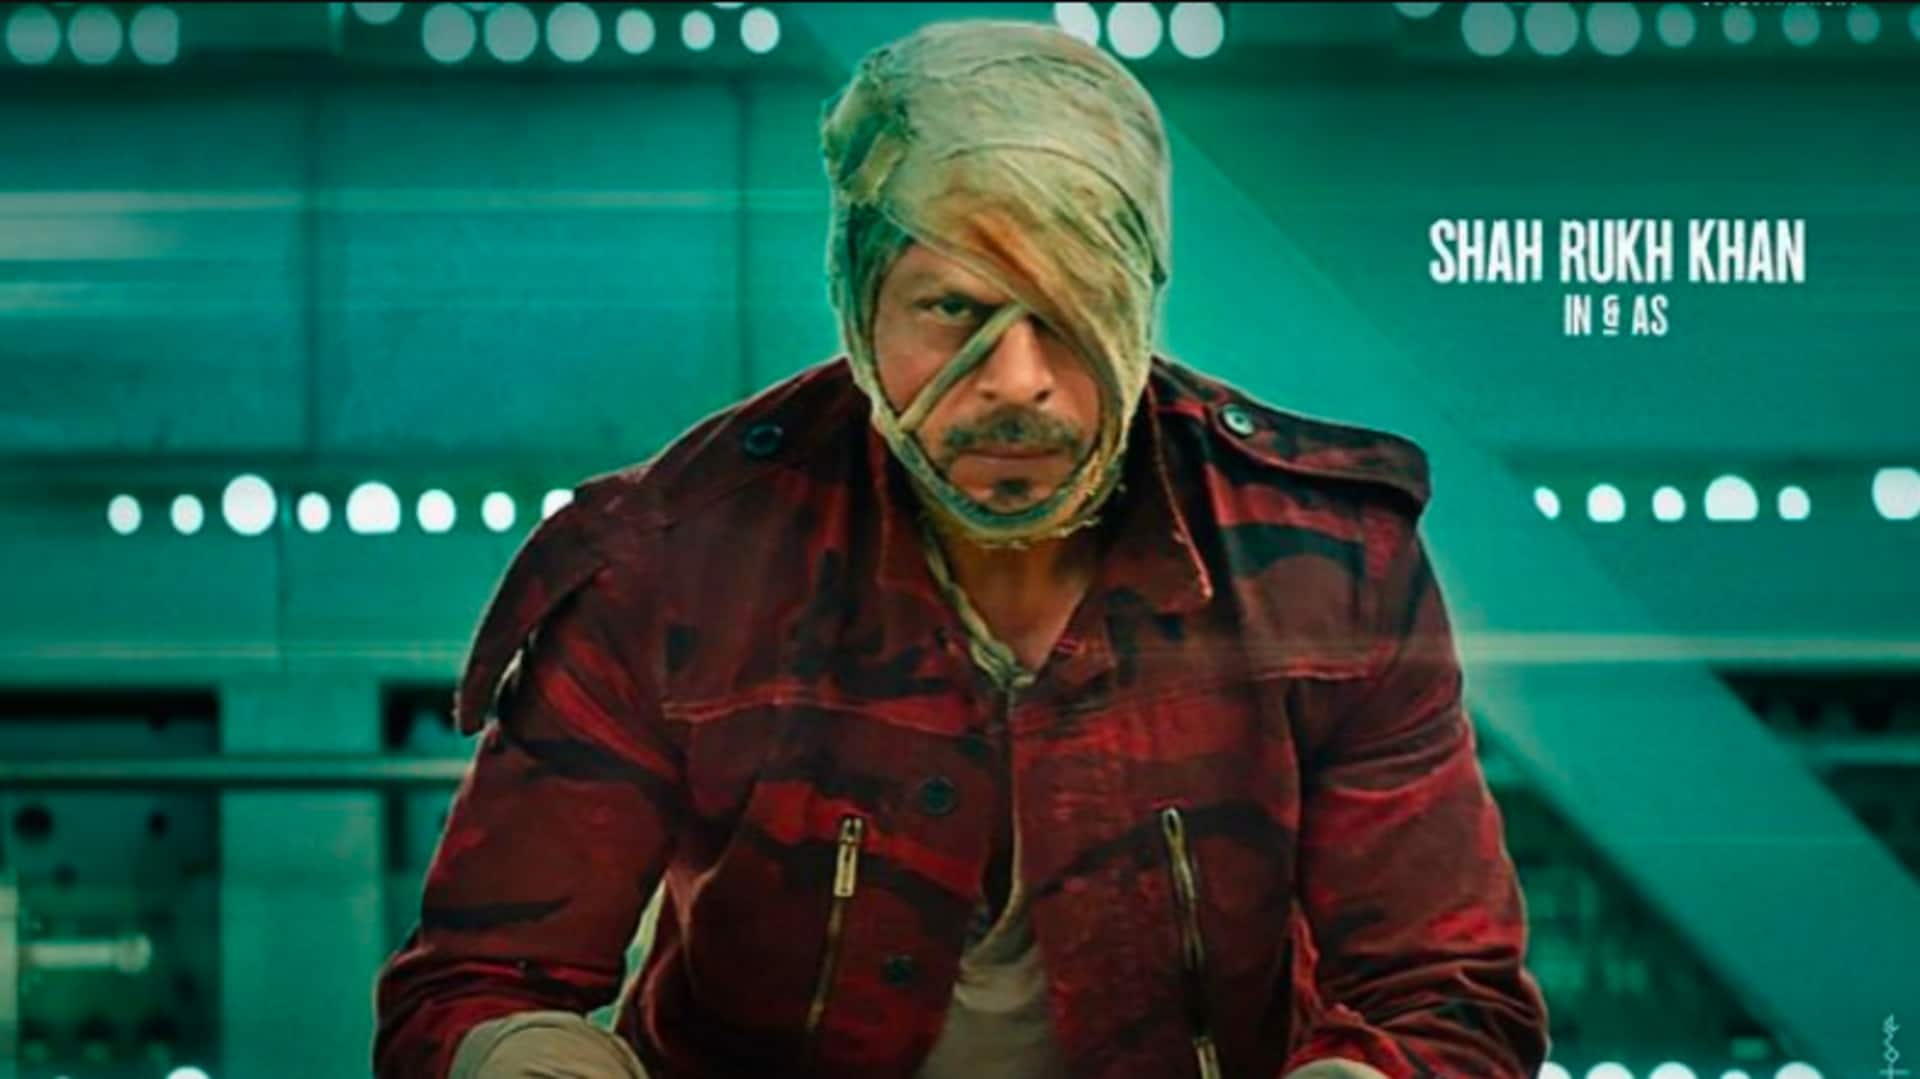 'जवान': शाहरुख खान की फिल्म में होंगे 6 गाने, सामने आई लिस्ट 